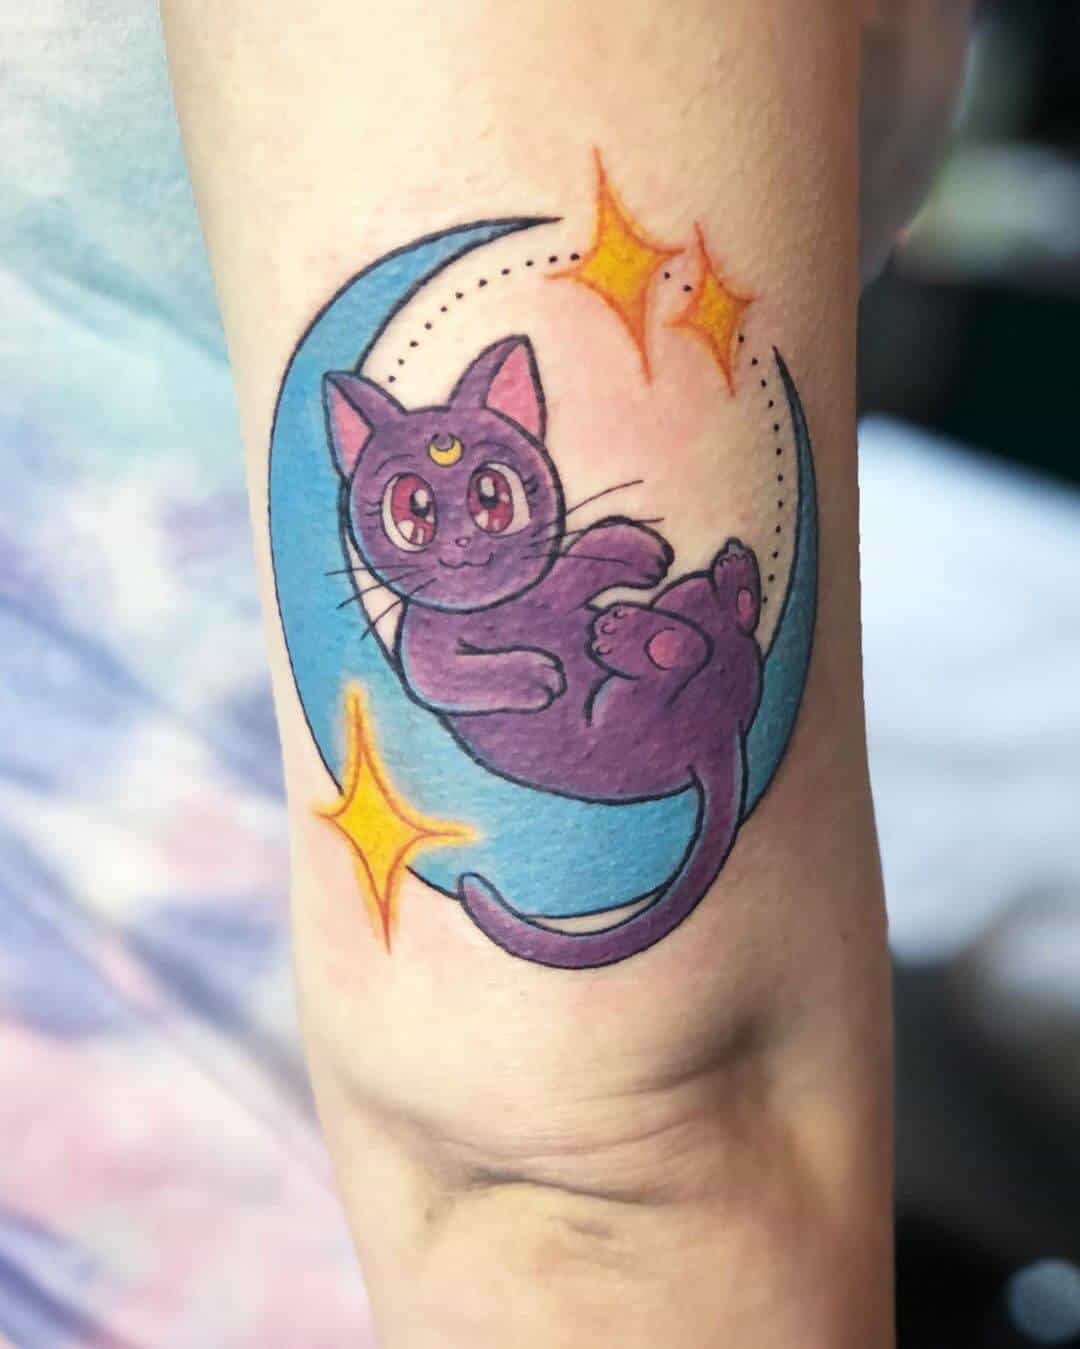 luna sailor moon tattoo on arm